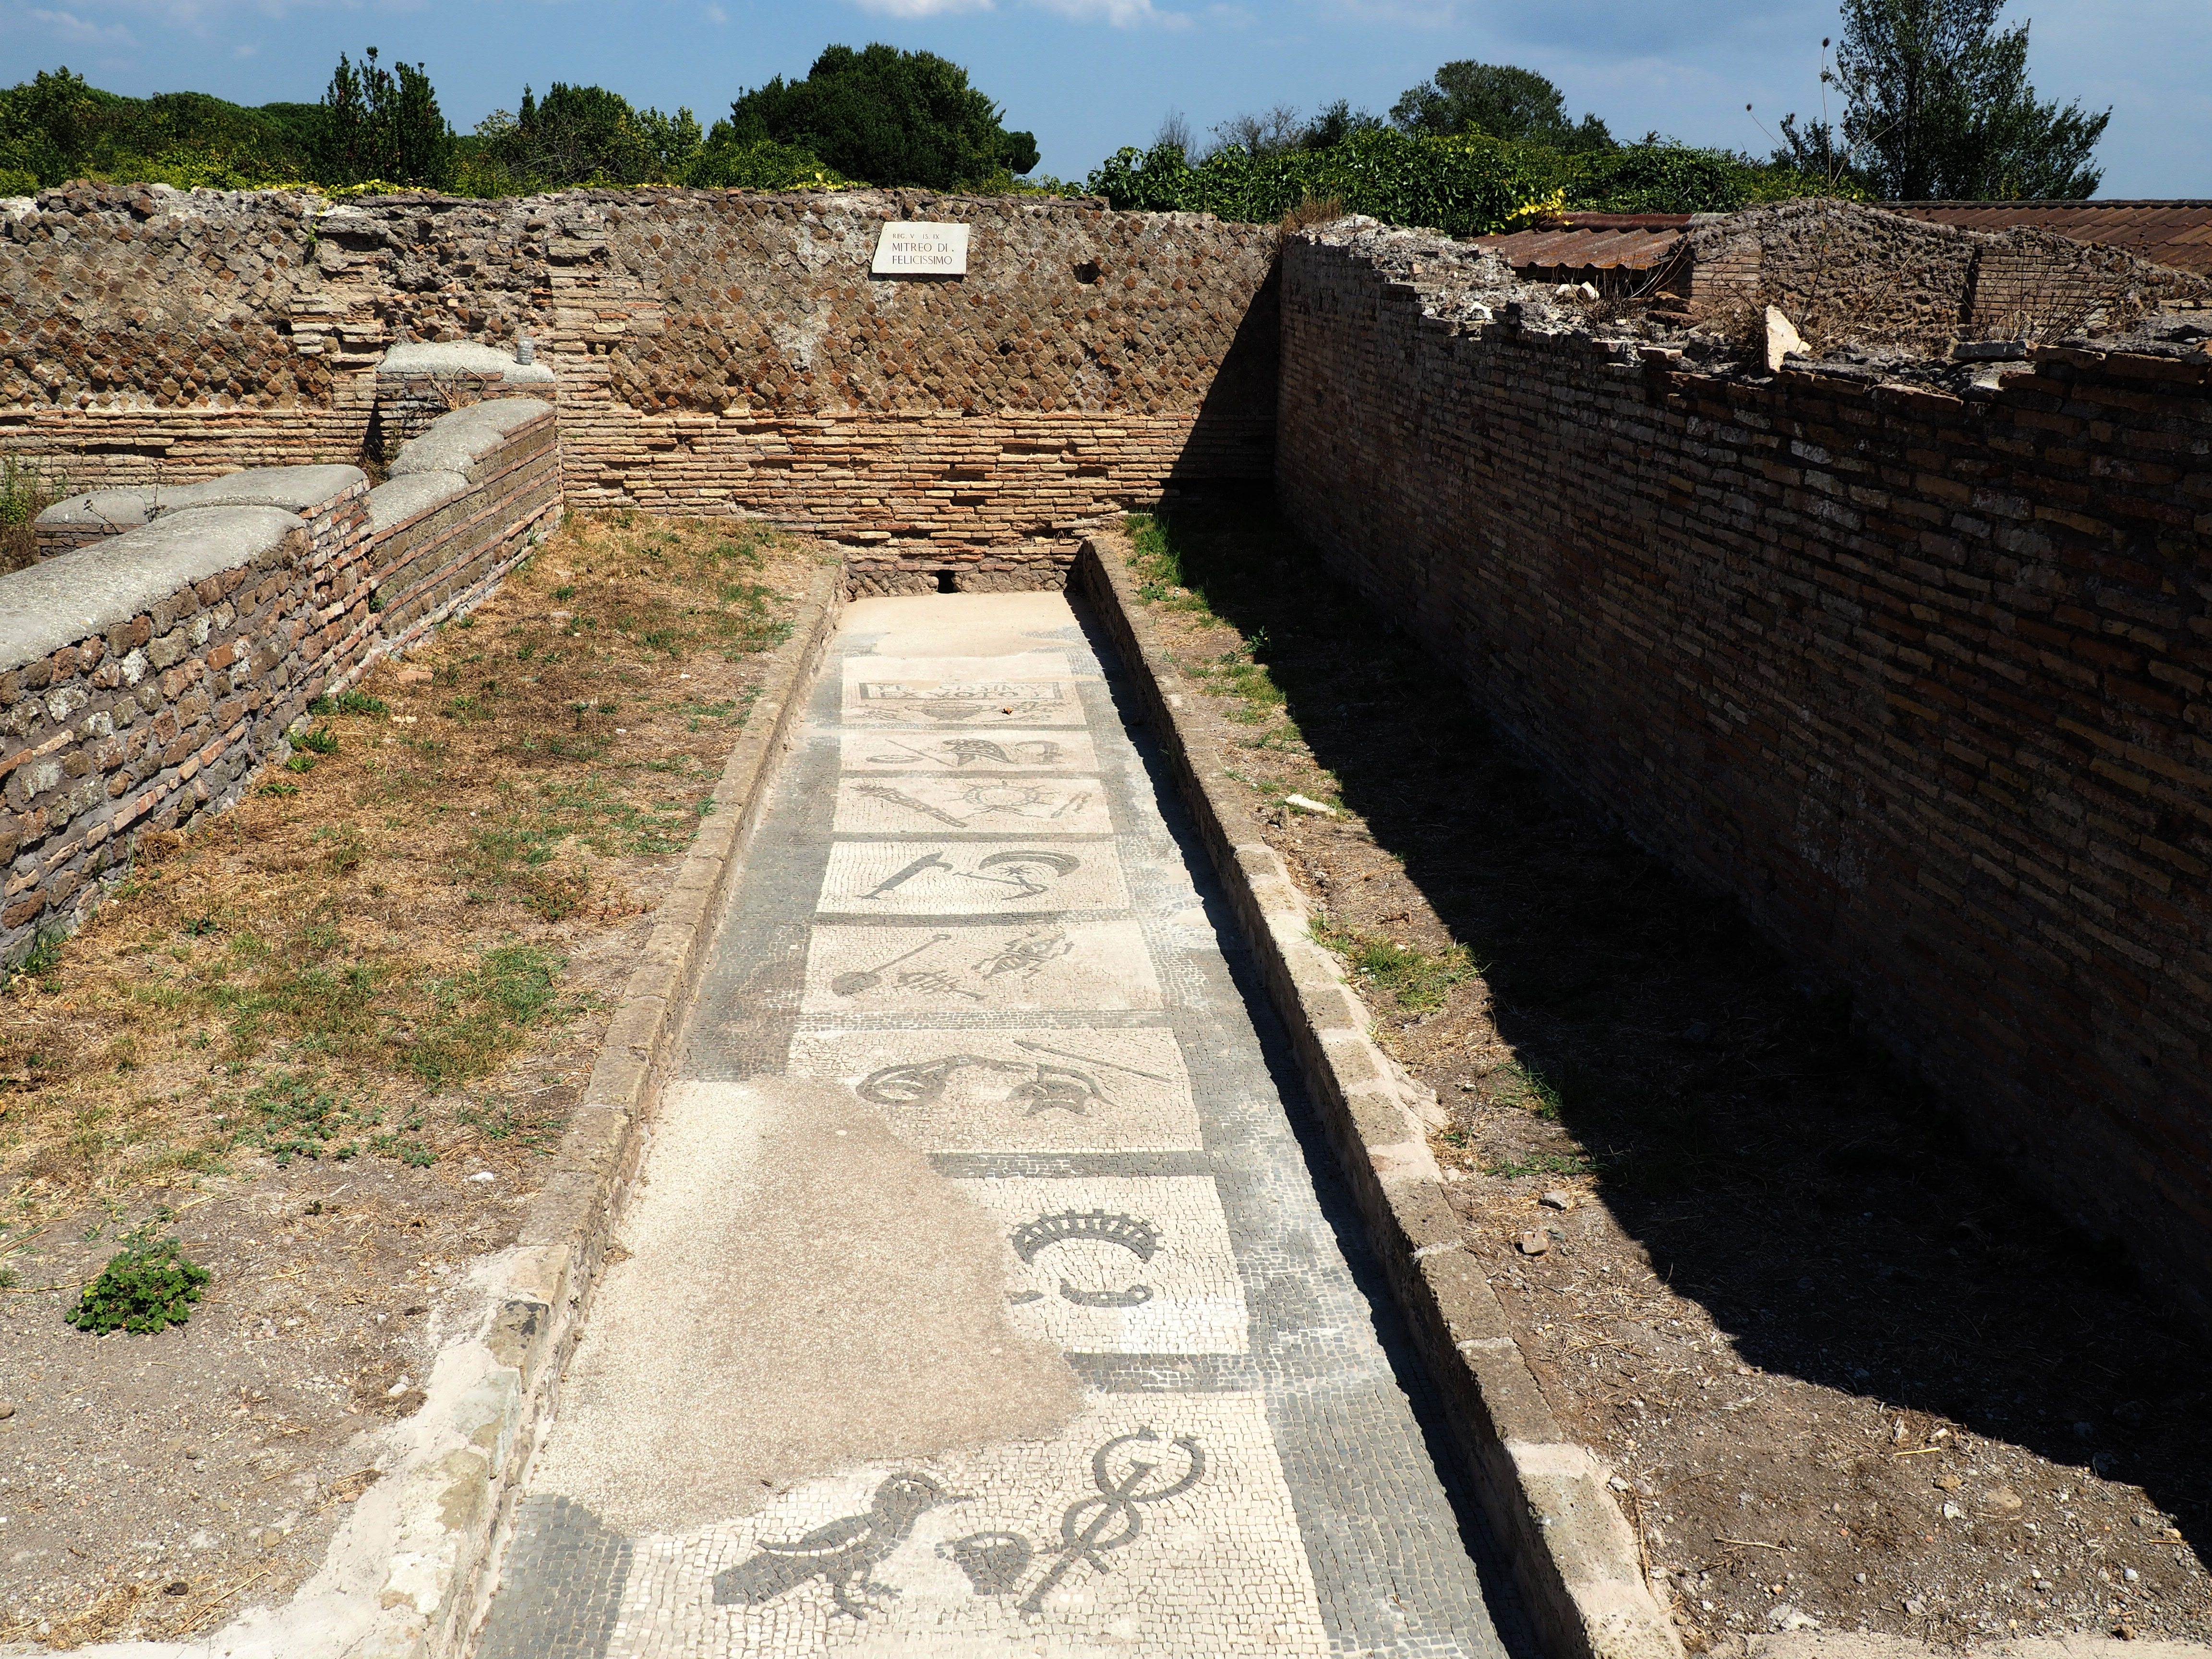 Foto 8: Seitsme pühitsusastme embleeme kujutav põrandamosaiik Felicissimuse mithraeum’is Ostias (foto: Ursula Vent)